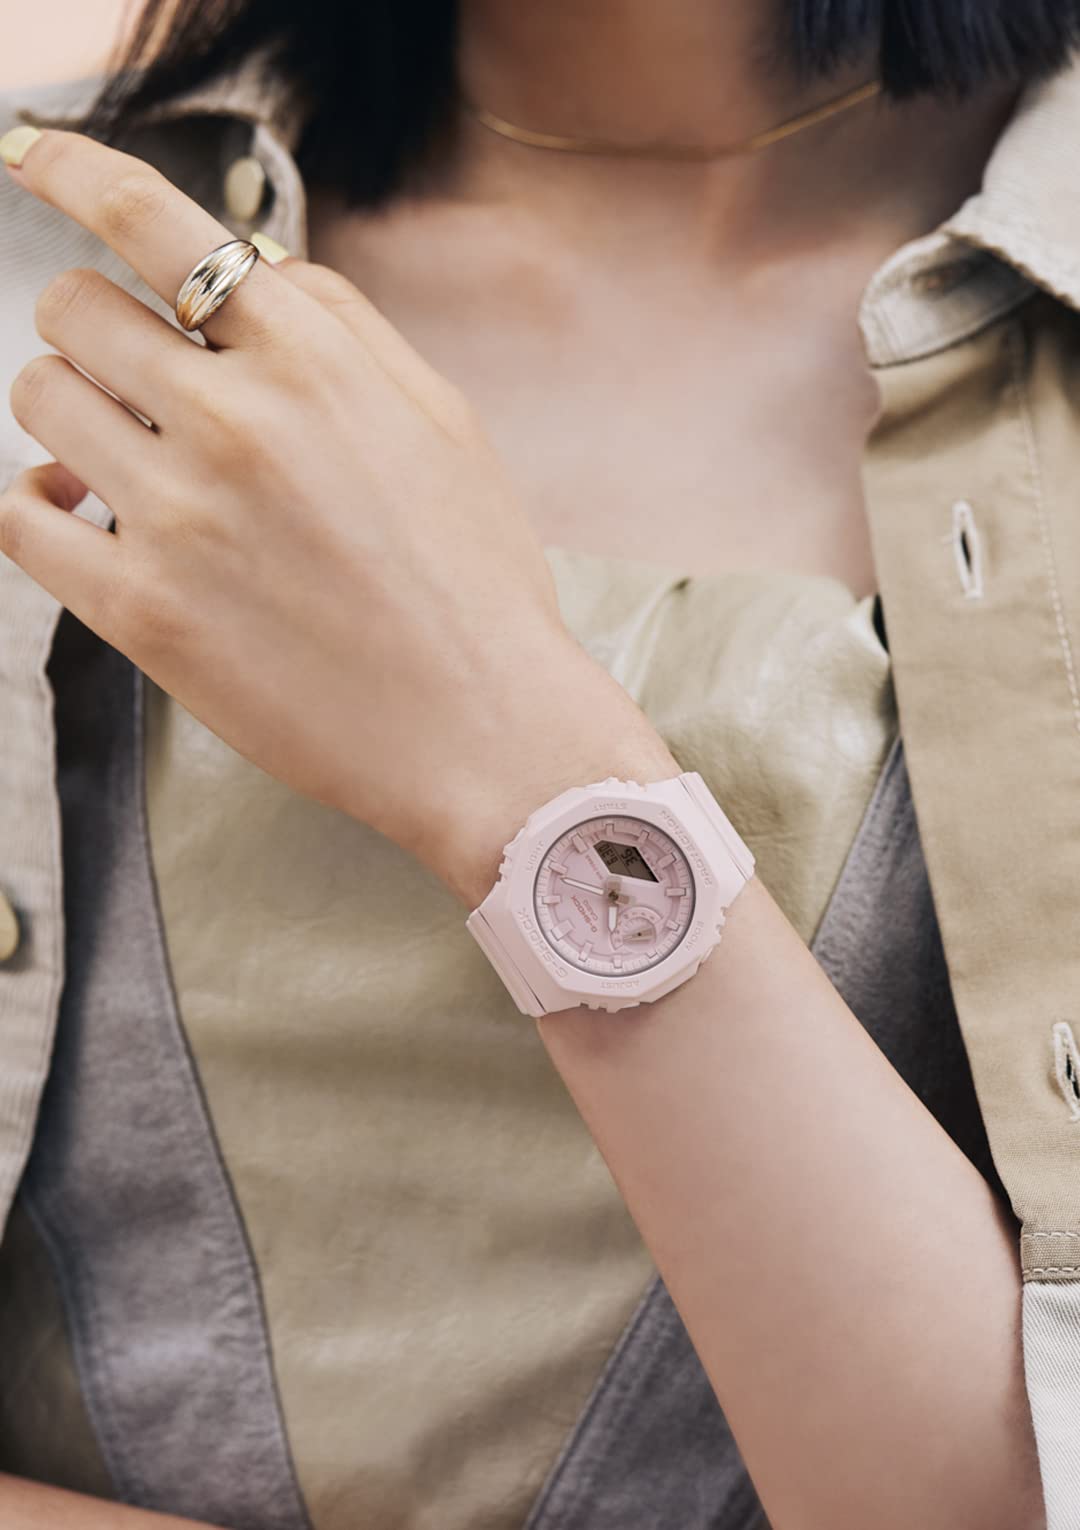 [カシオ] 腕時計 ジーショック 【国内正規品】 ミッドサイズモデル GMA-S2100BA-4AJF レディース ピンク - BanzaiHobby